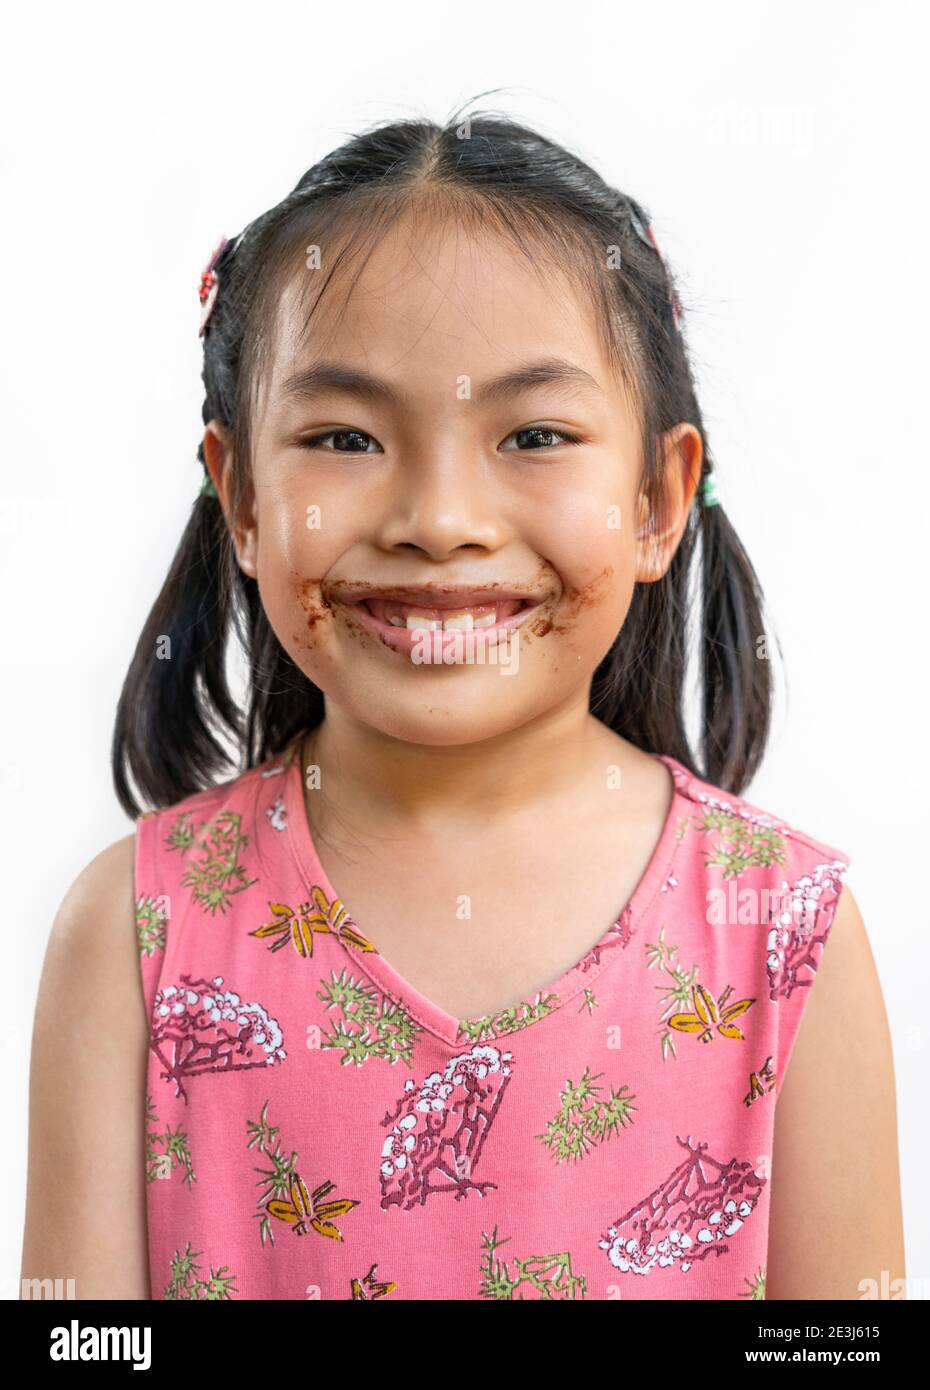 Portrait Asian niedlich Kind Mädchen mit chaotisch von Schokolade um den Mund, großes Lächeln auf niedlichen Gesicht, schwarze Haare, das Tragen schöner rosa Kleid, isoliert im Stockfoto